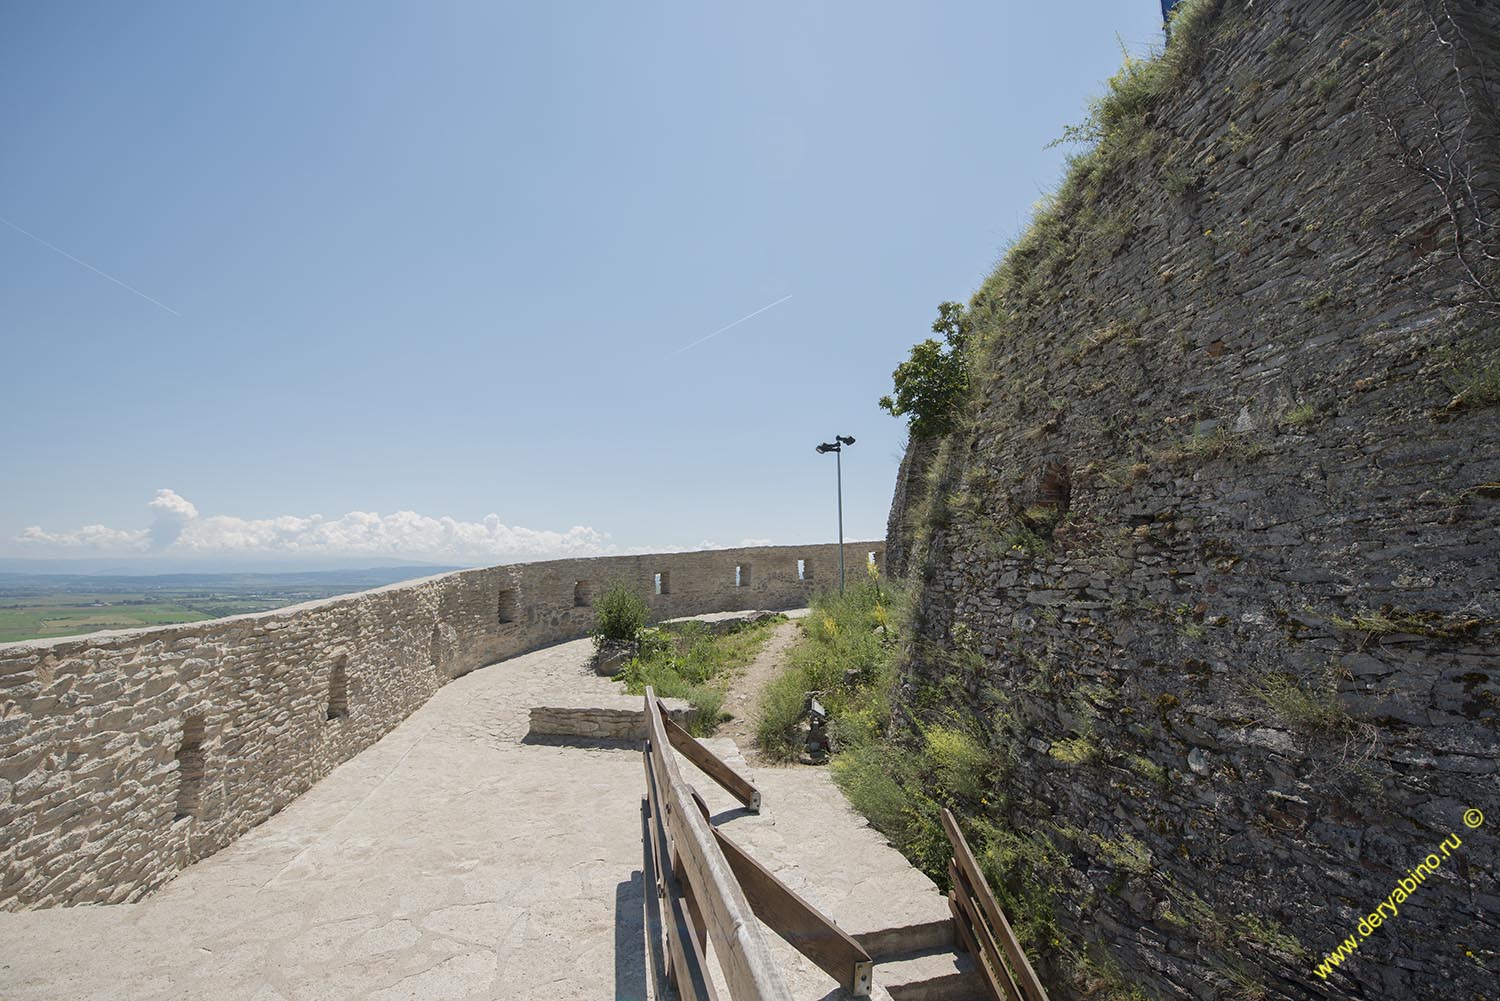    Fortress of Deva Romania